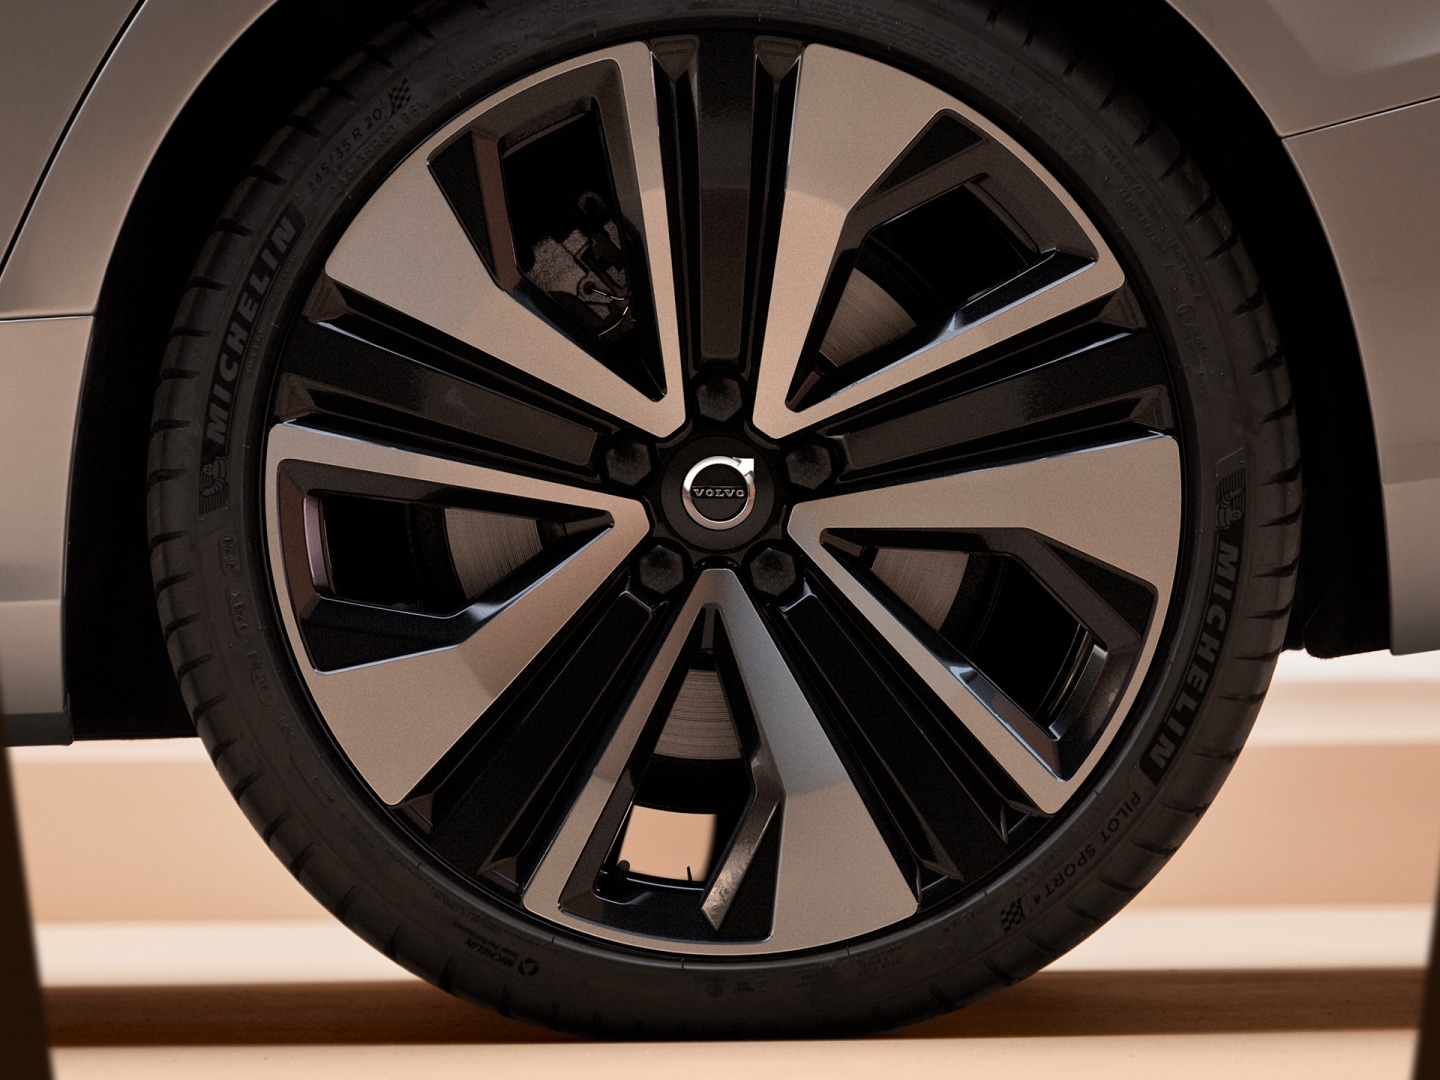 Il design elegante e contemporaneo delle borchie ruote della Volvo V60 mild hybrid.